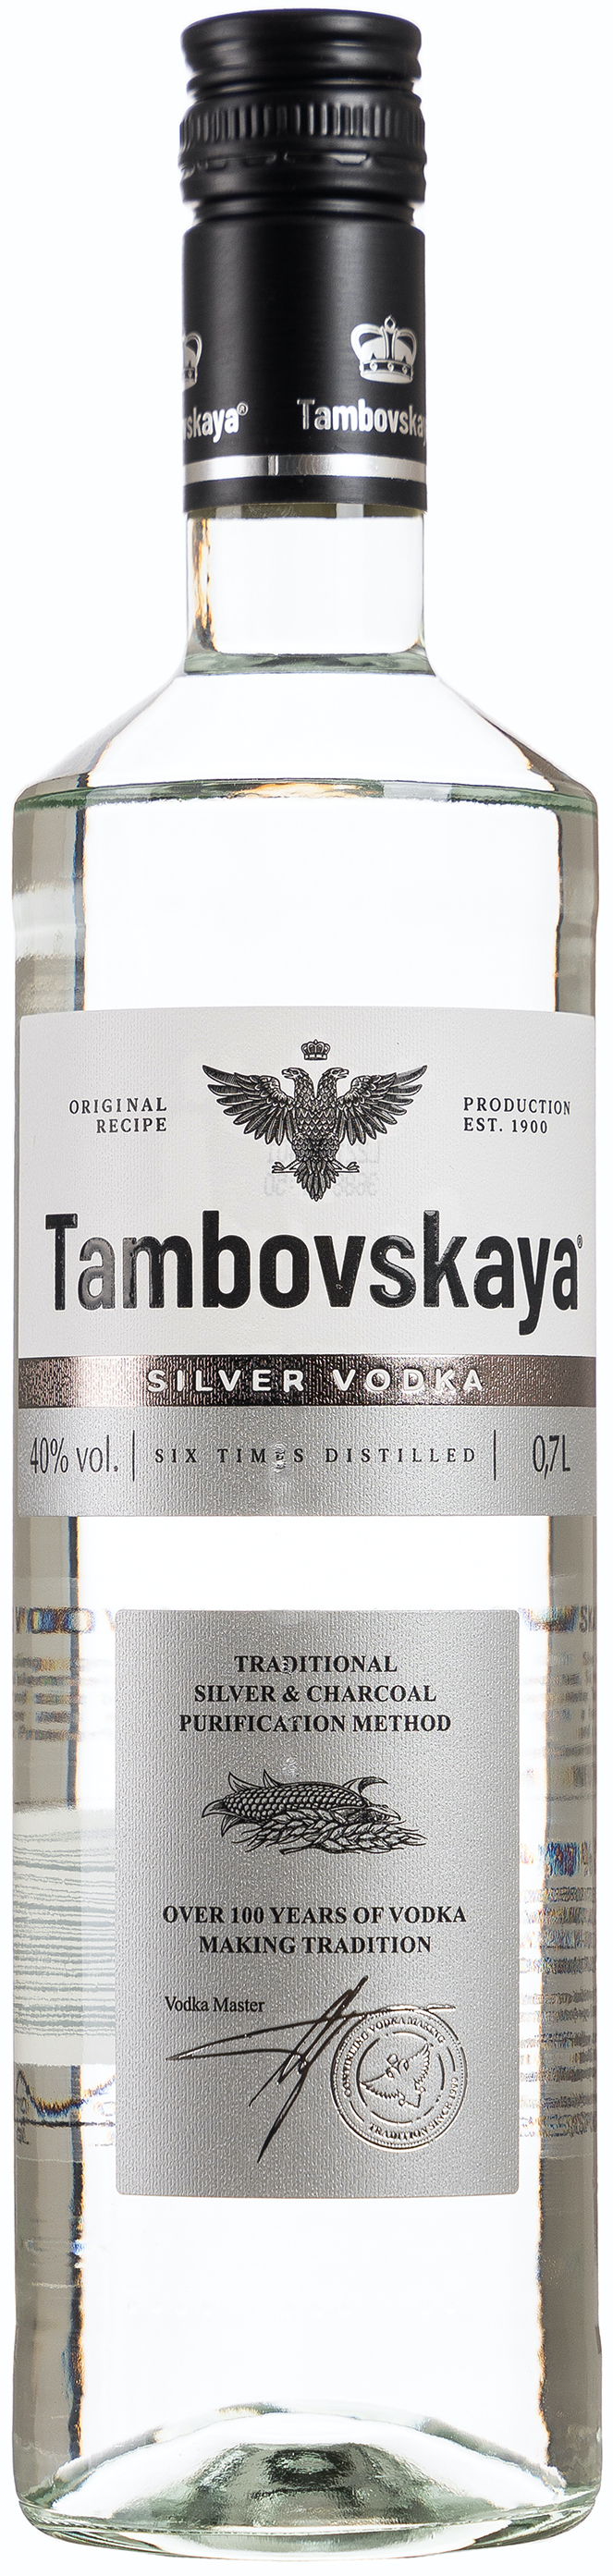 Tambovskaya Vodka 40% vol. 0,7L 